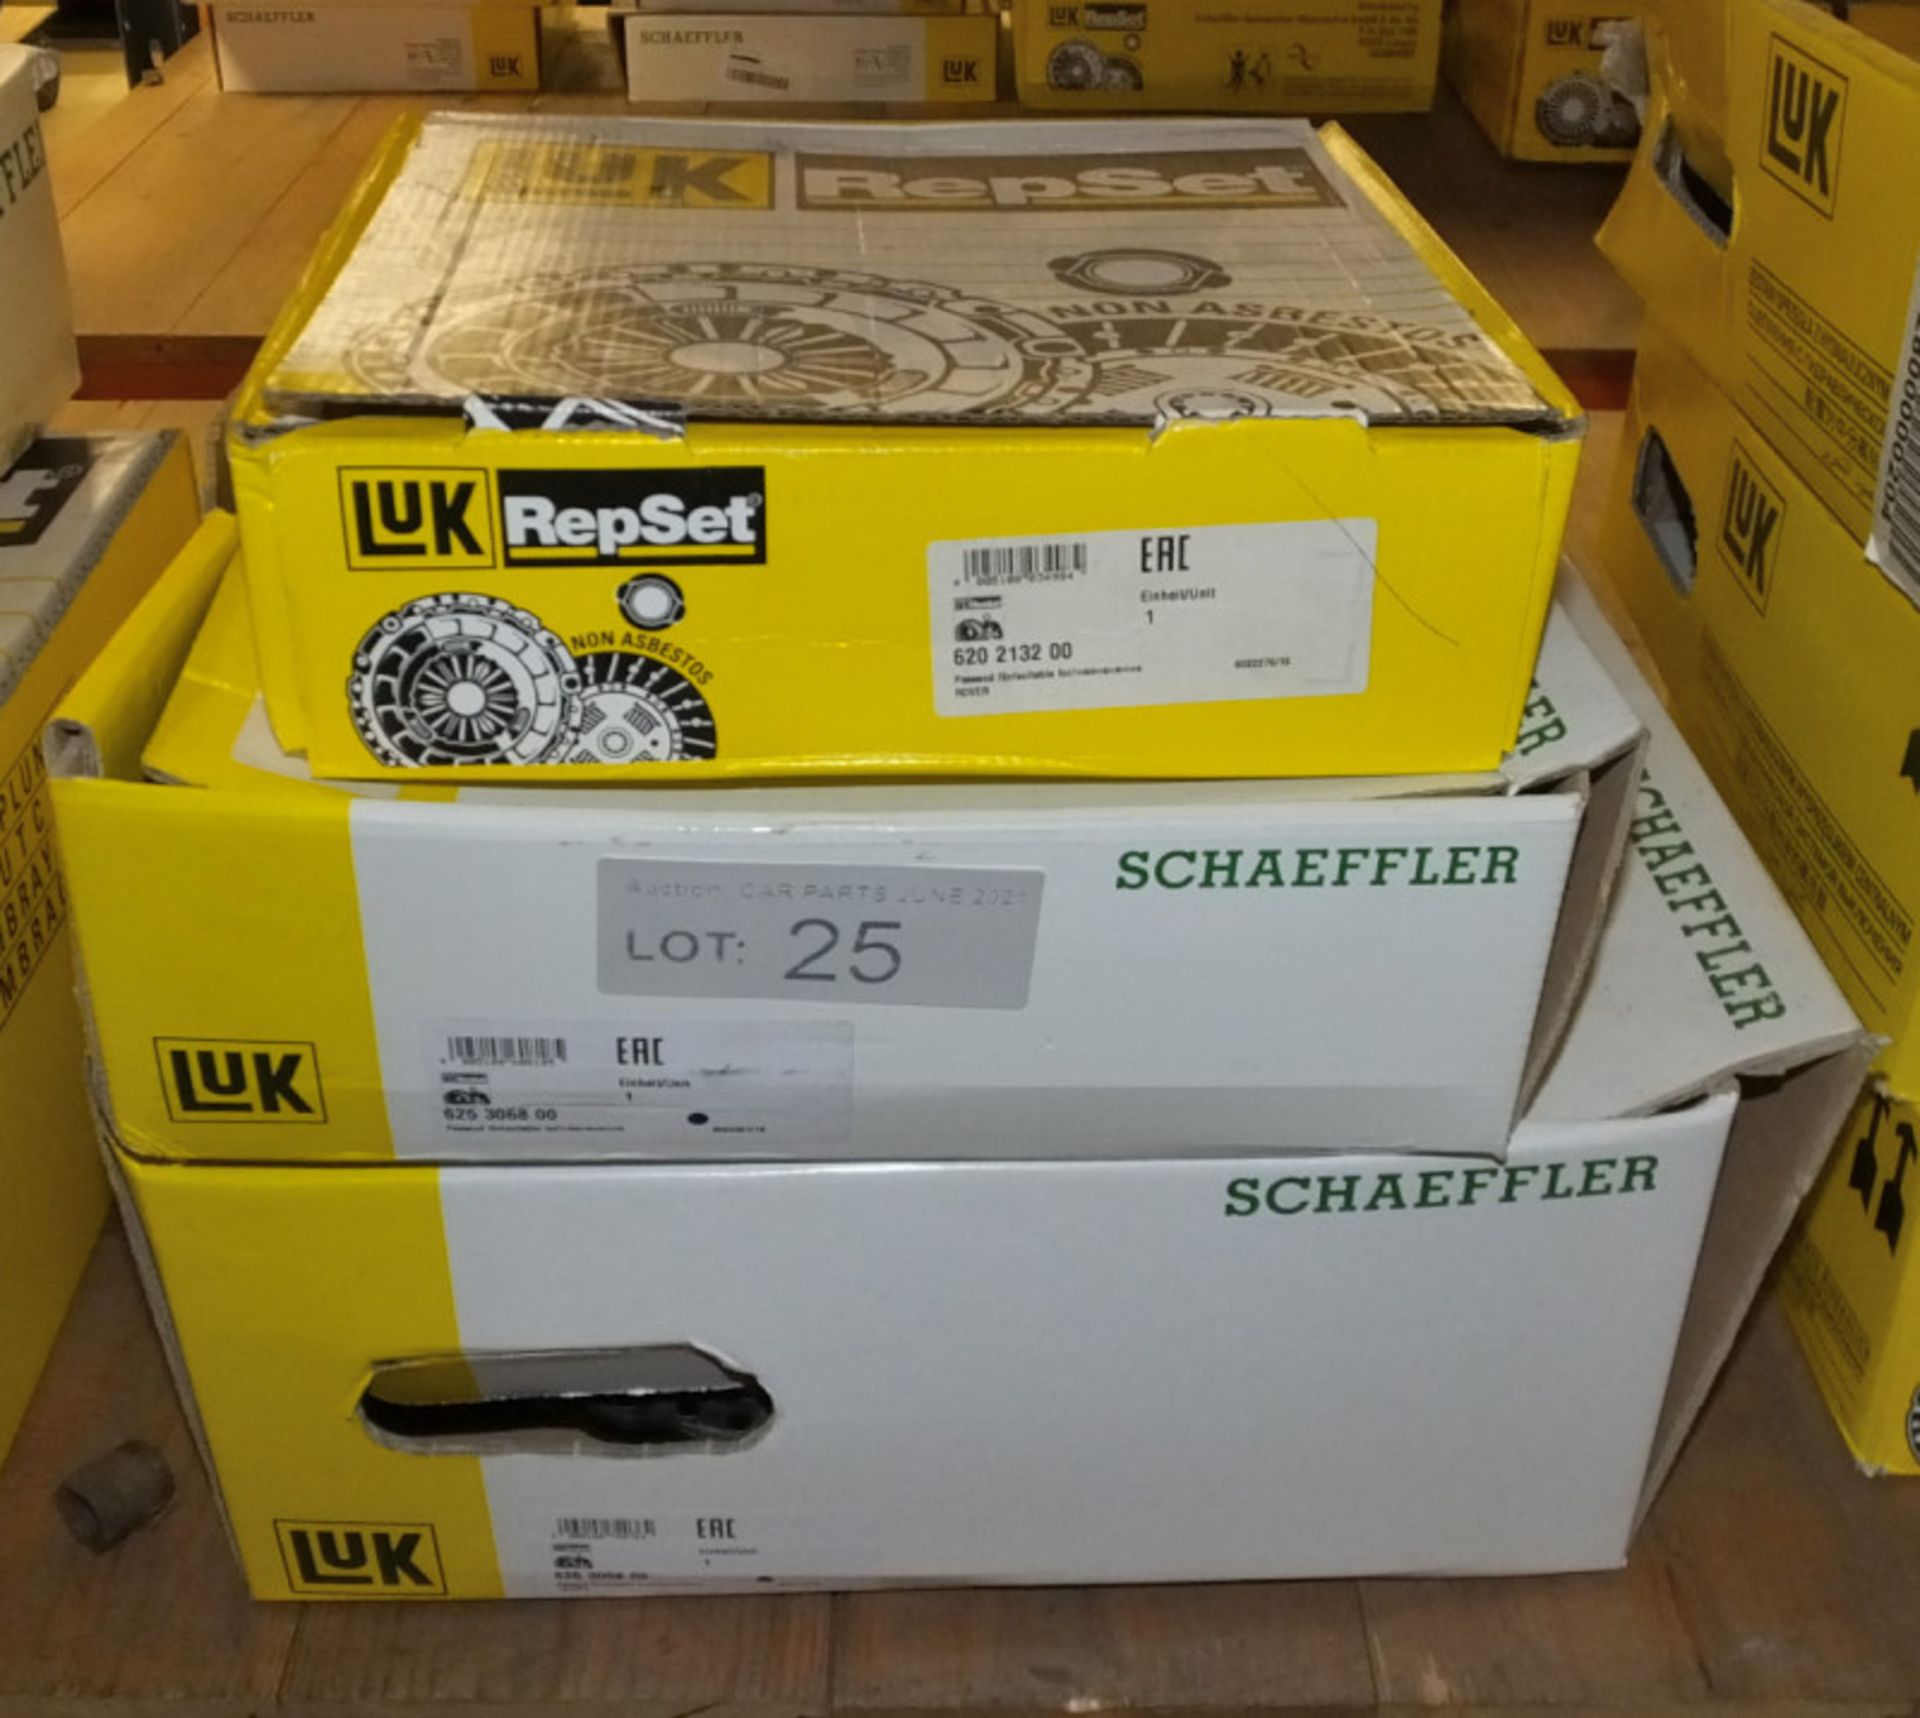 3x LUK Repset Clutch Kits (2x Schaeffler) - Models - 625 3068 00, 620 2132 00 & 626 3058 0